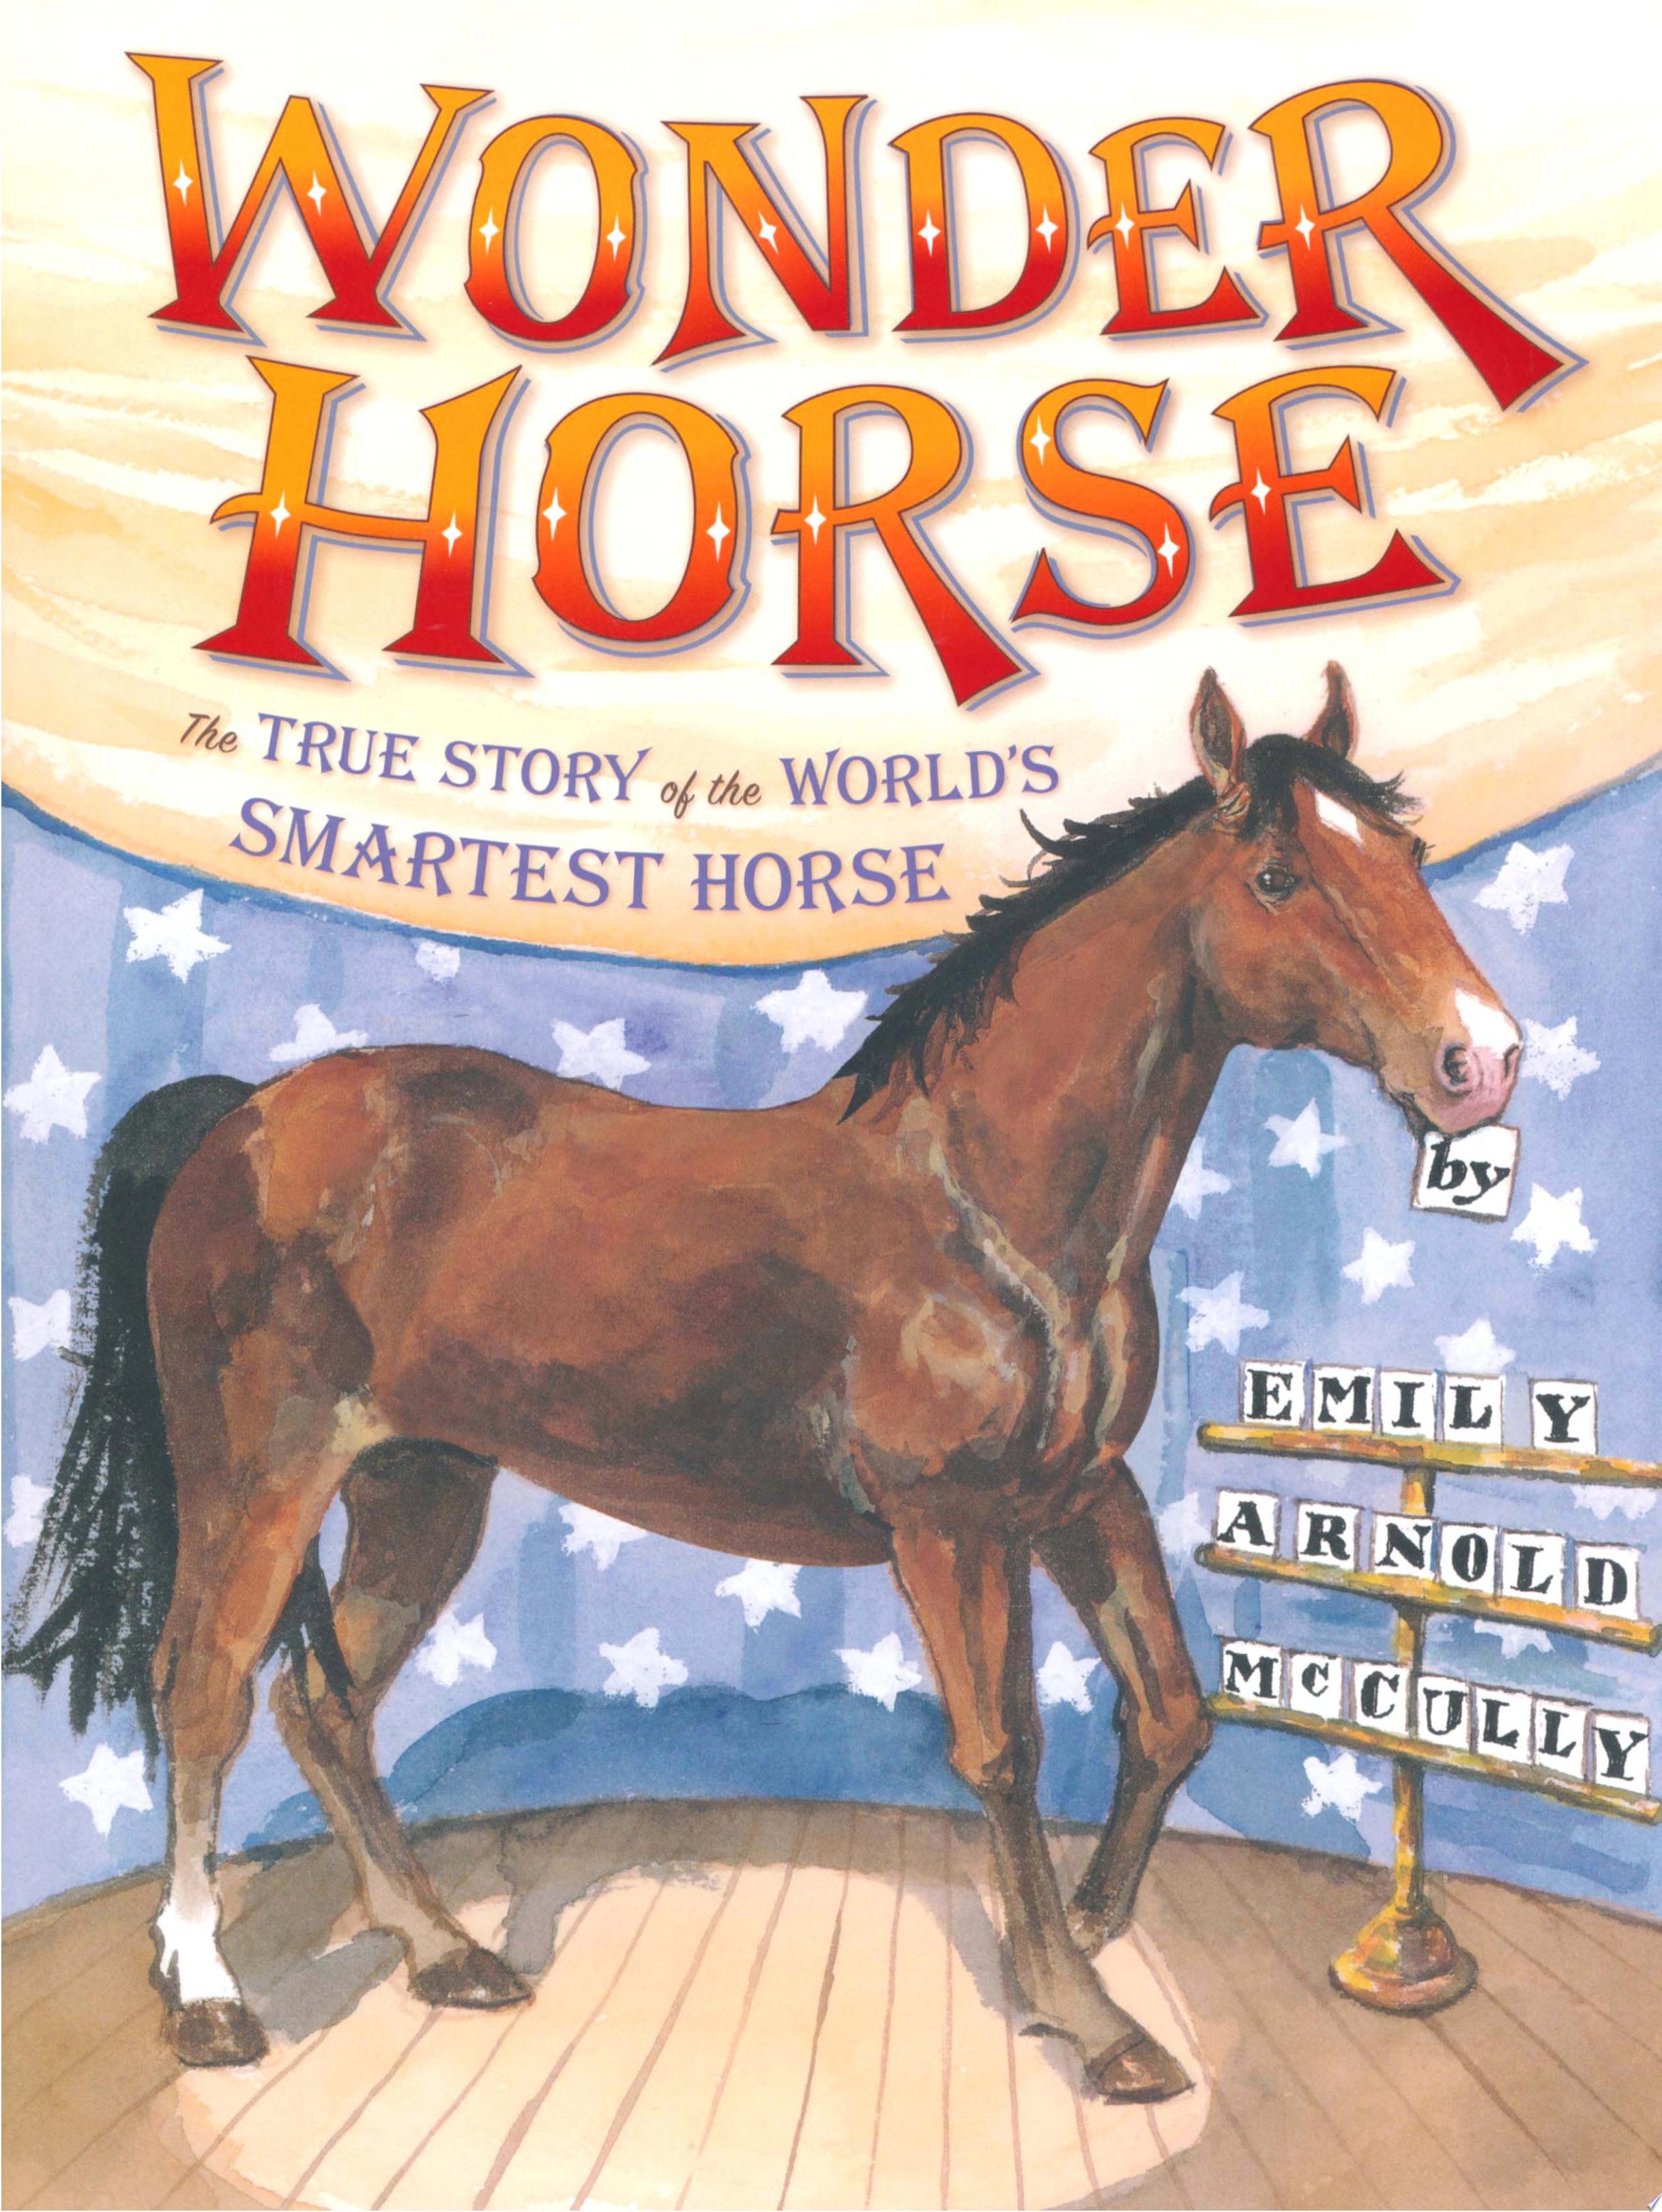 Image for "Wonder Horse"